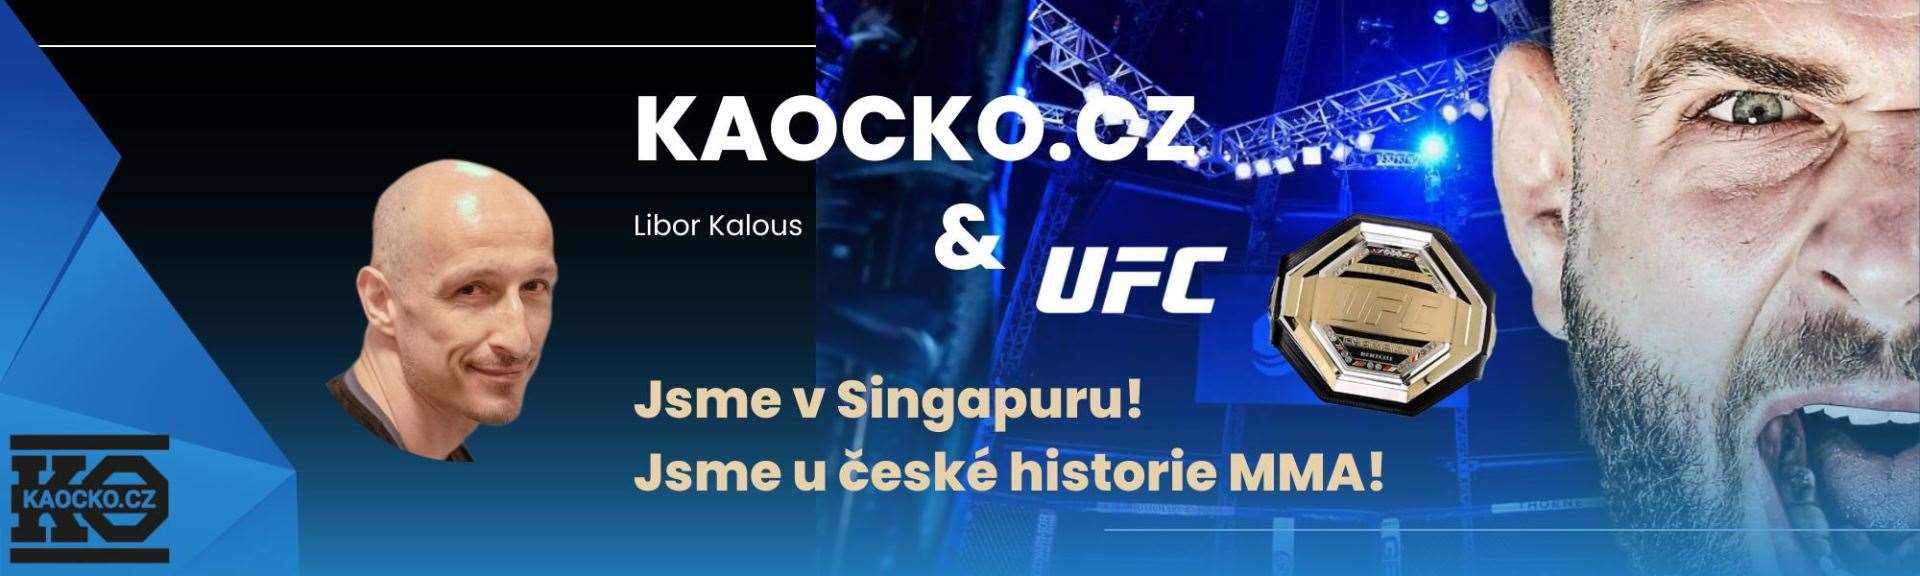 ZDROJ: kaocko.cz